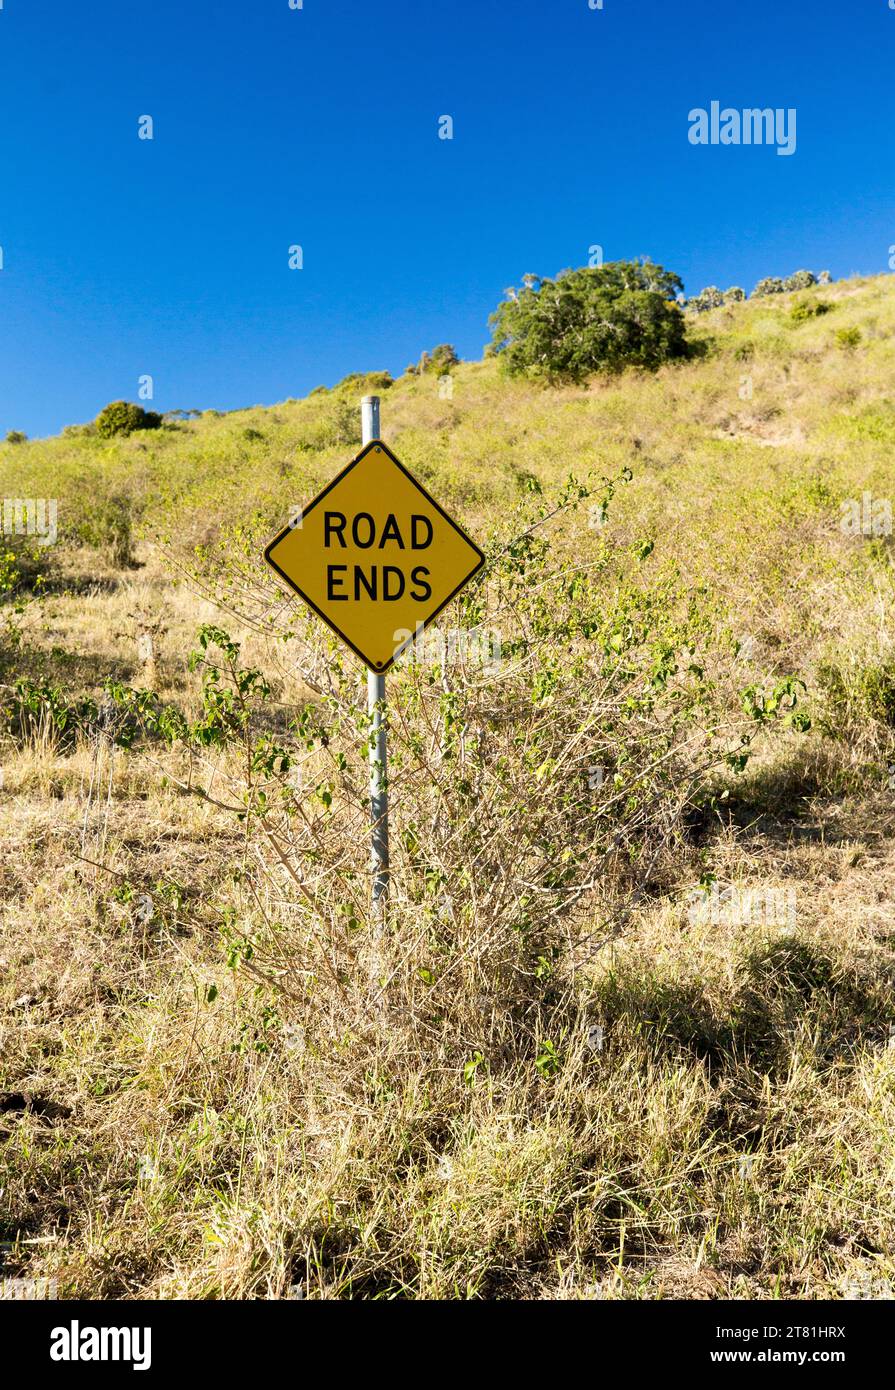 Señal de tráfico, que indica el final de una carretera, entre la hierba en la ladera sin carretera a la vista en la zona rural - mucho más allá de la vista del final de la carretera Foto de stock